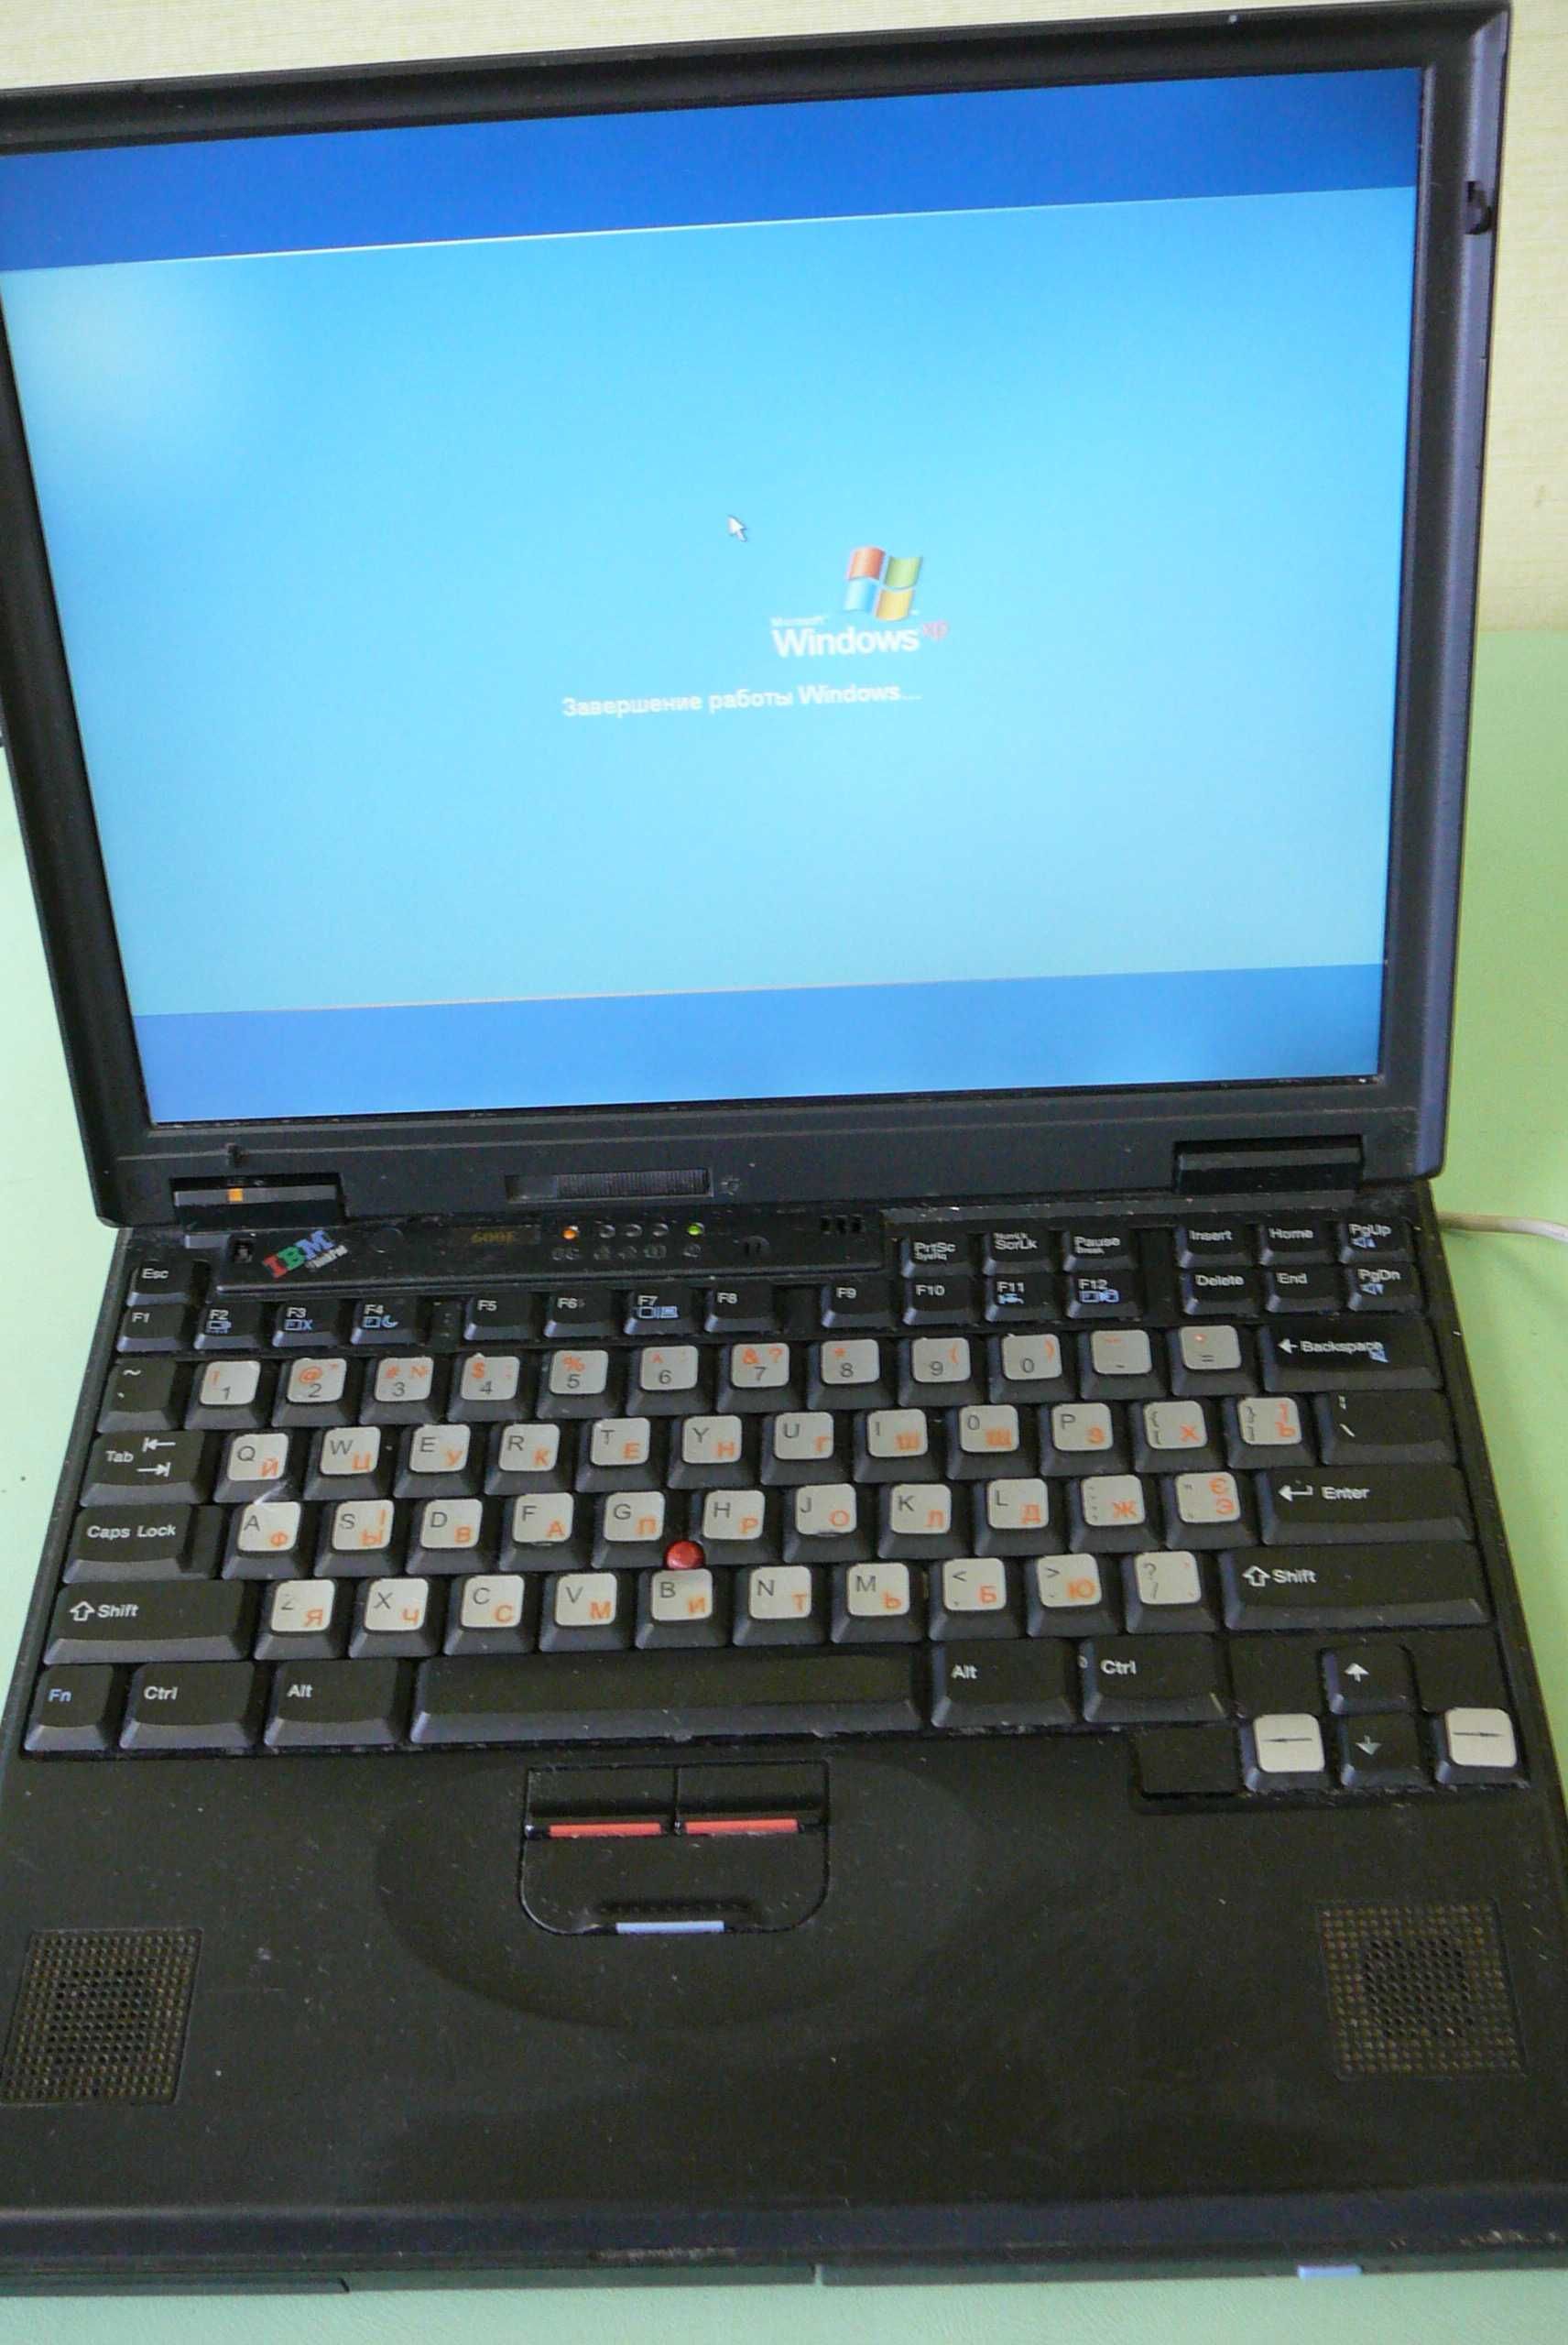 Раритетный ноутбук IBM ThinkPad Type 2645, рабочее состояние с 1998 г